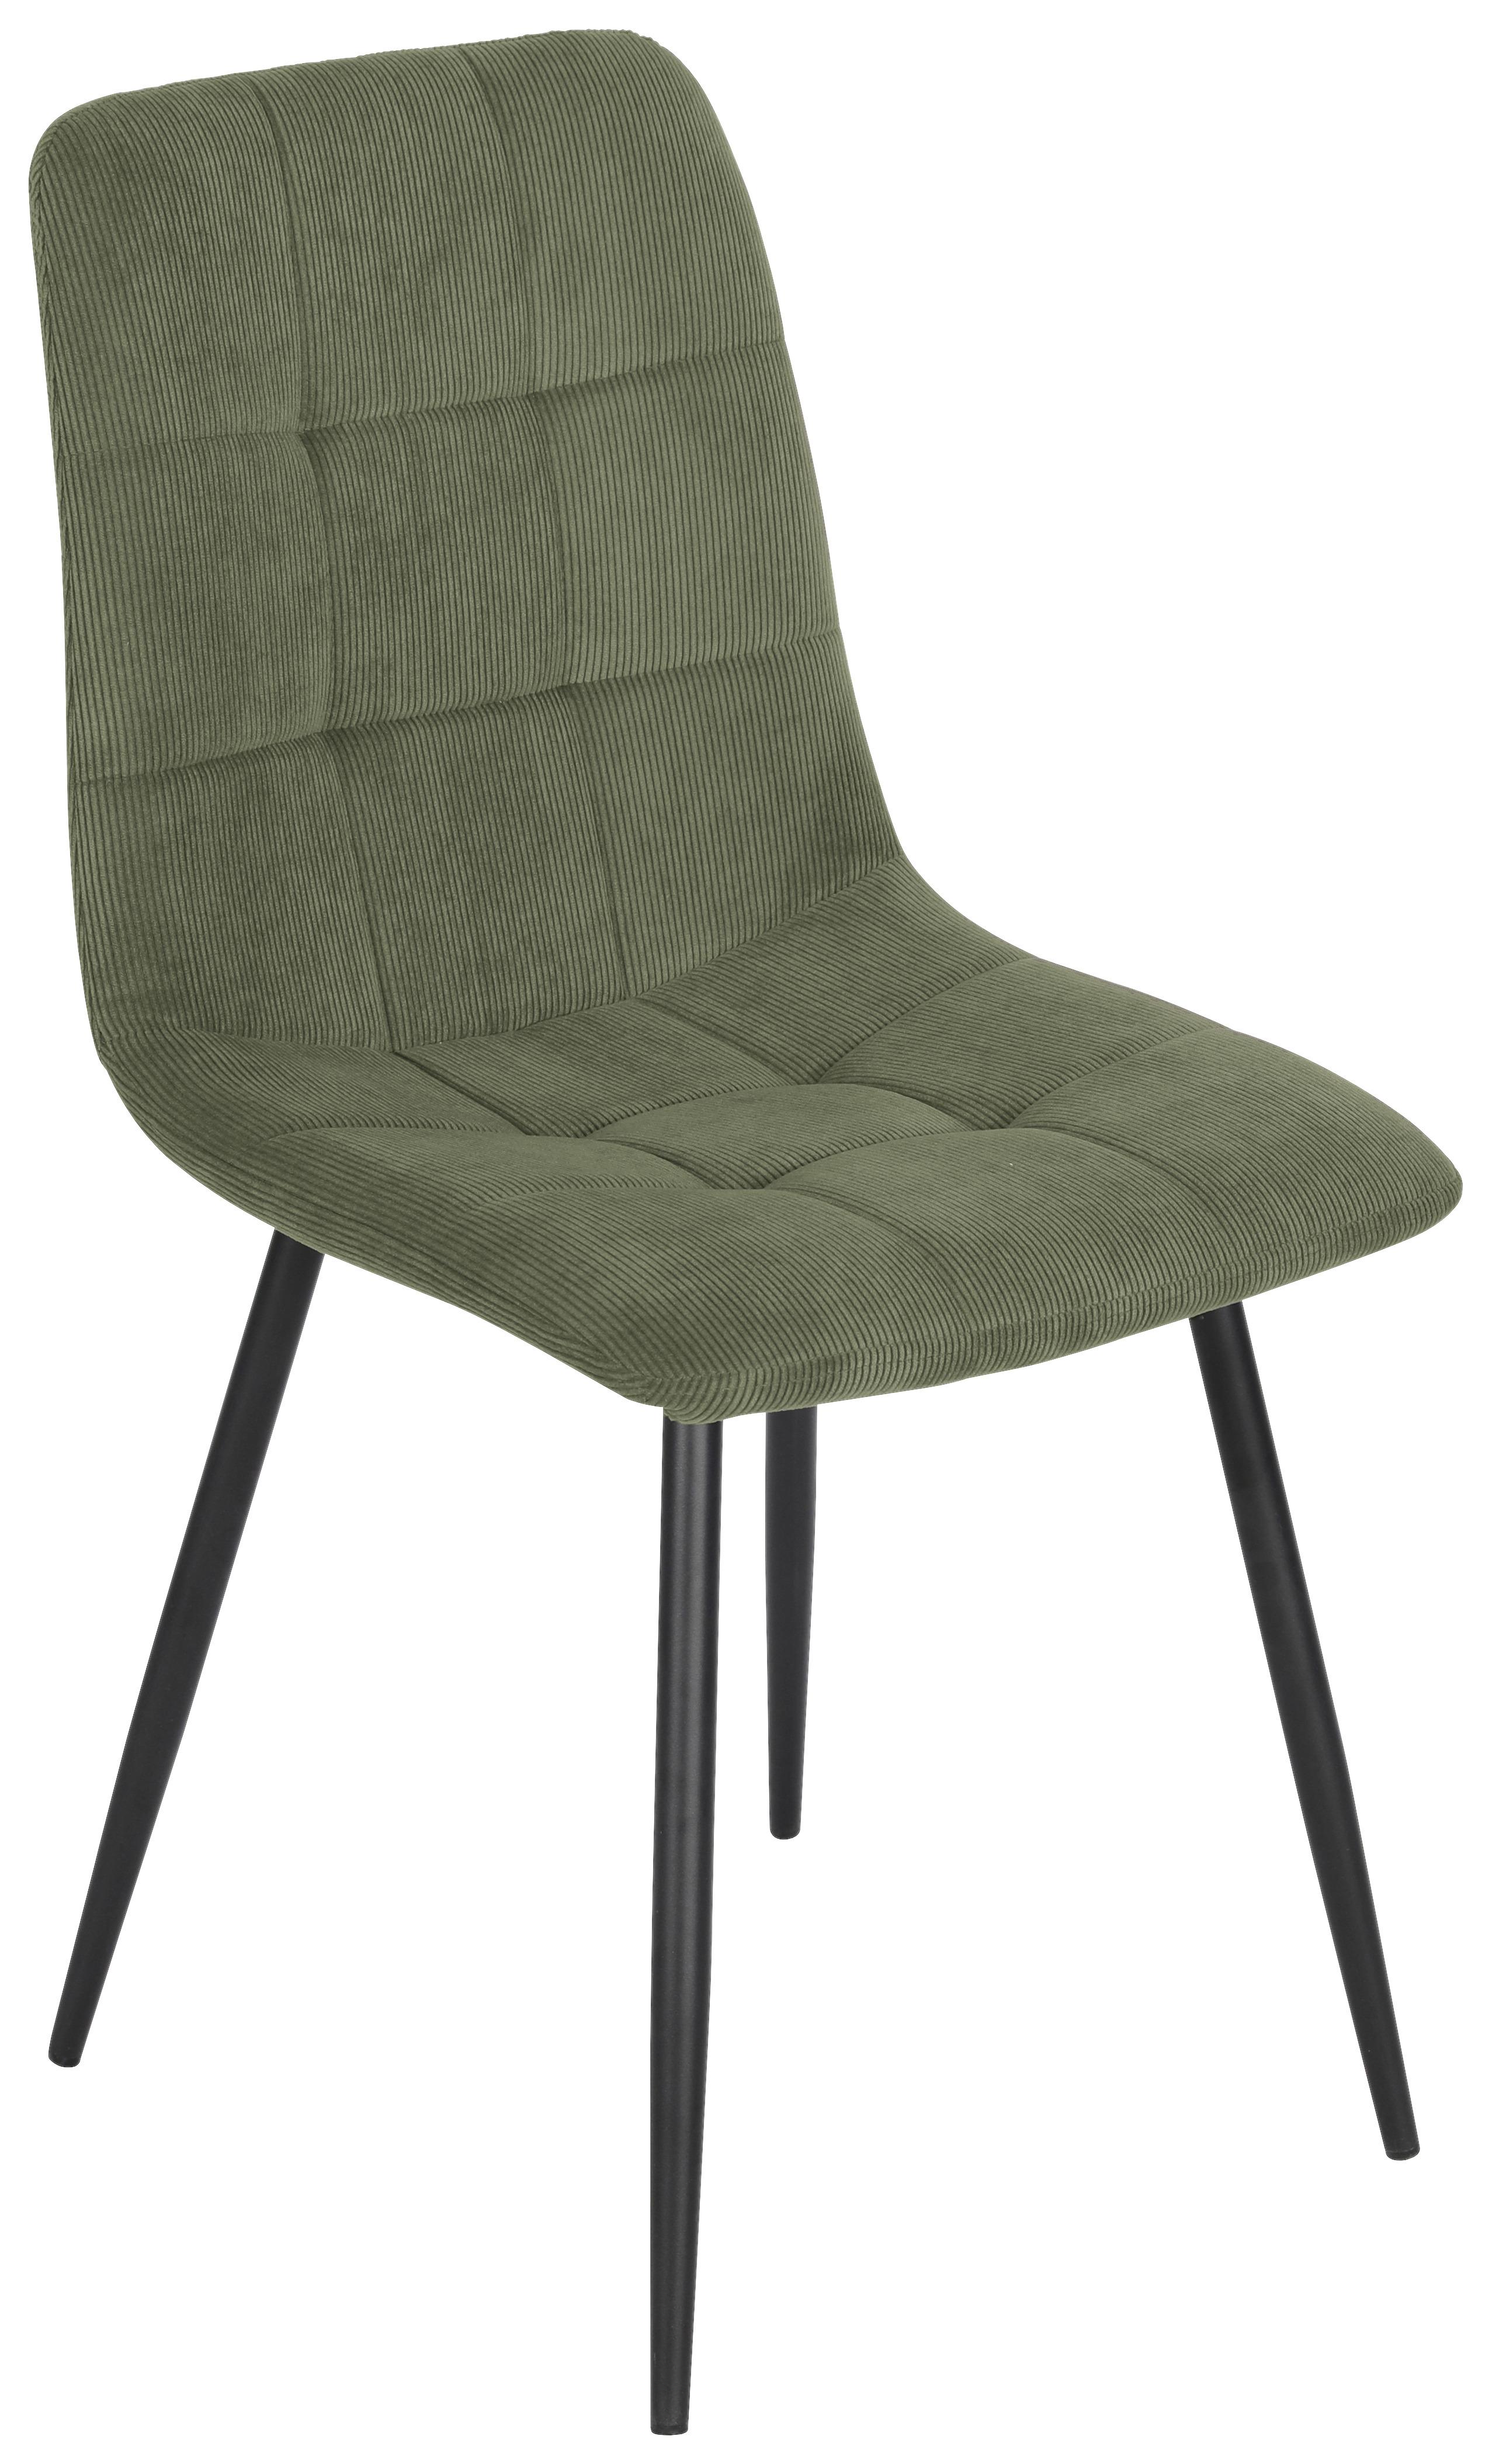 Stuhl aus Kord in Grün - Schwarz/Grün, MODERN, Holz/Textil (45/87/57cm) - Based